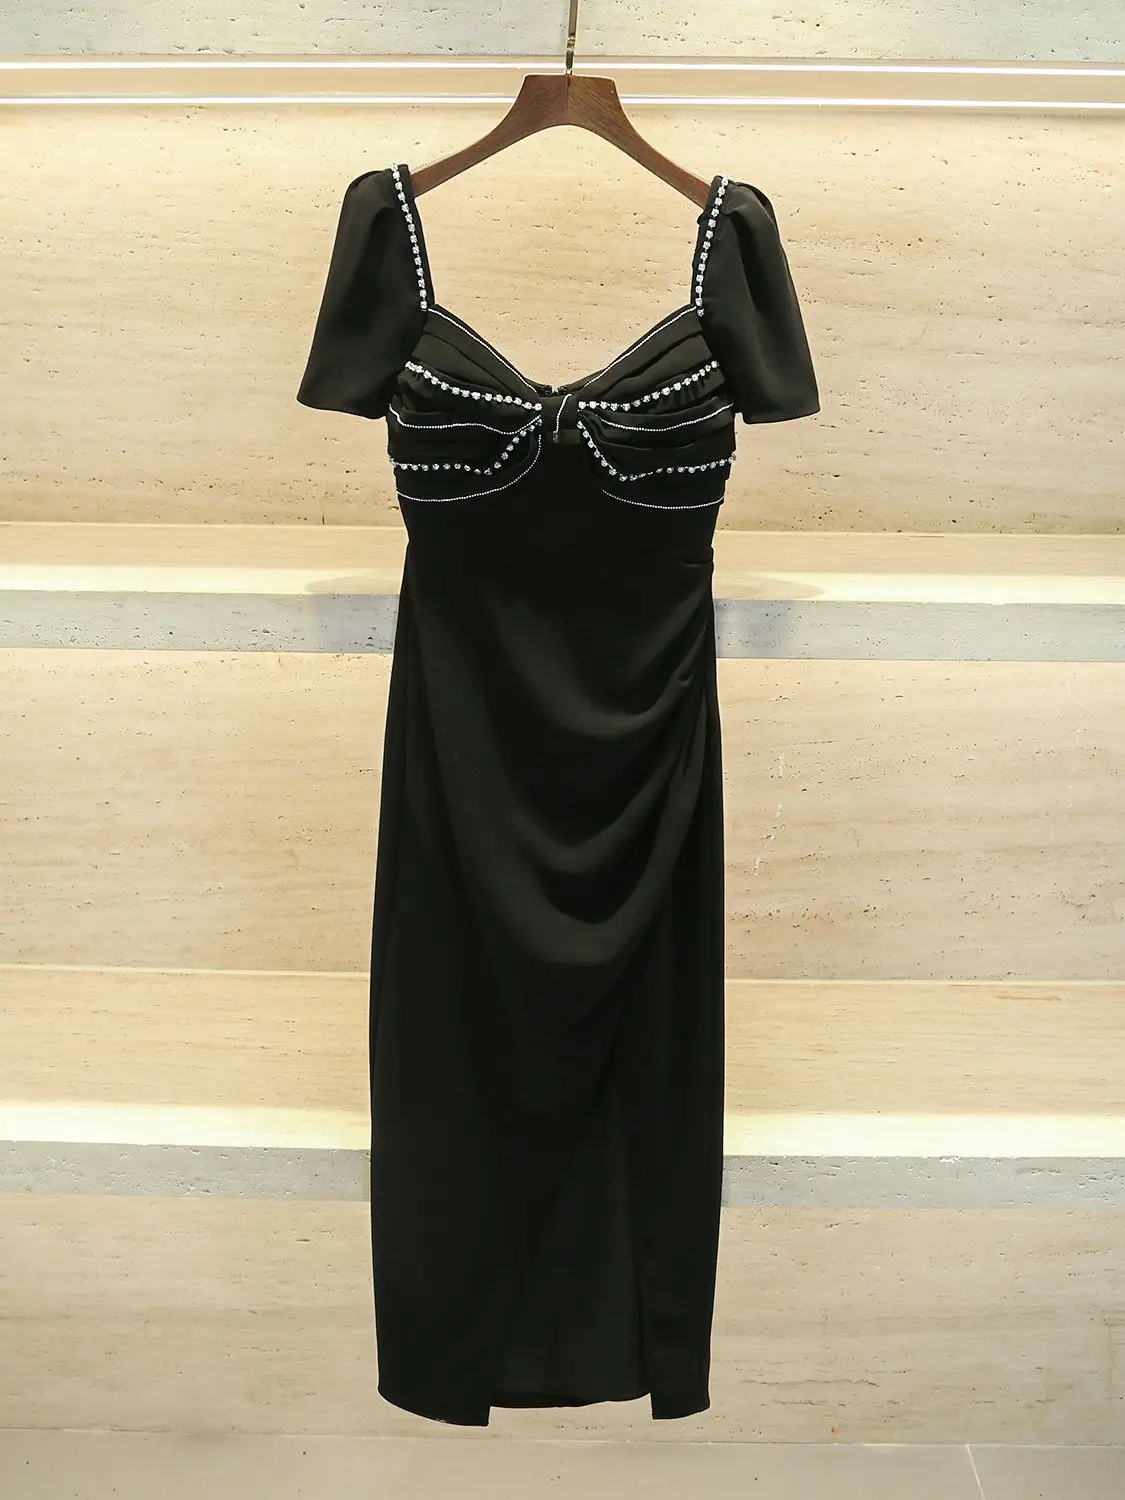 

Женское платье средней длины со стразами и бантом, черное плиссированное платье с квадратным вырезом и коротким рукавом, женское платье с открытой спиной